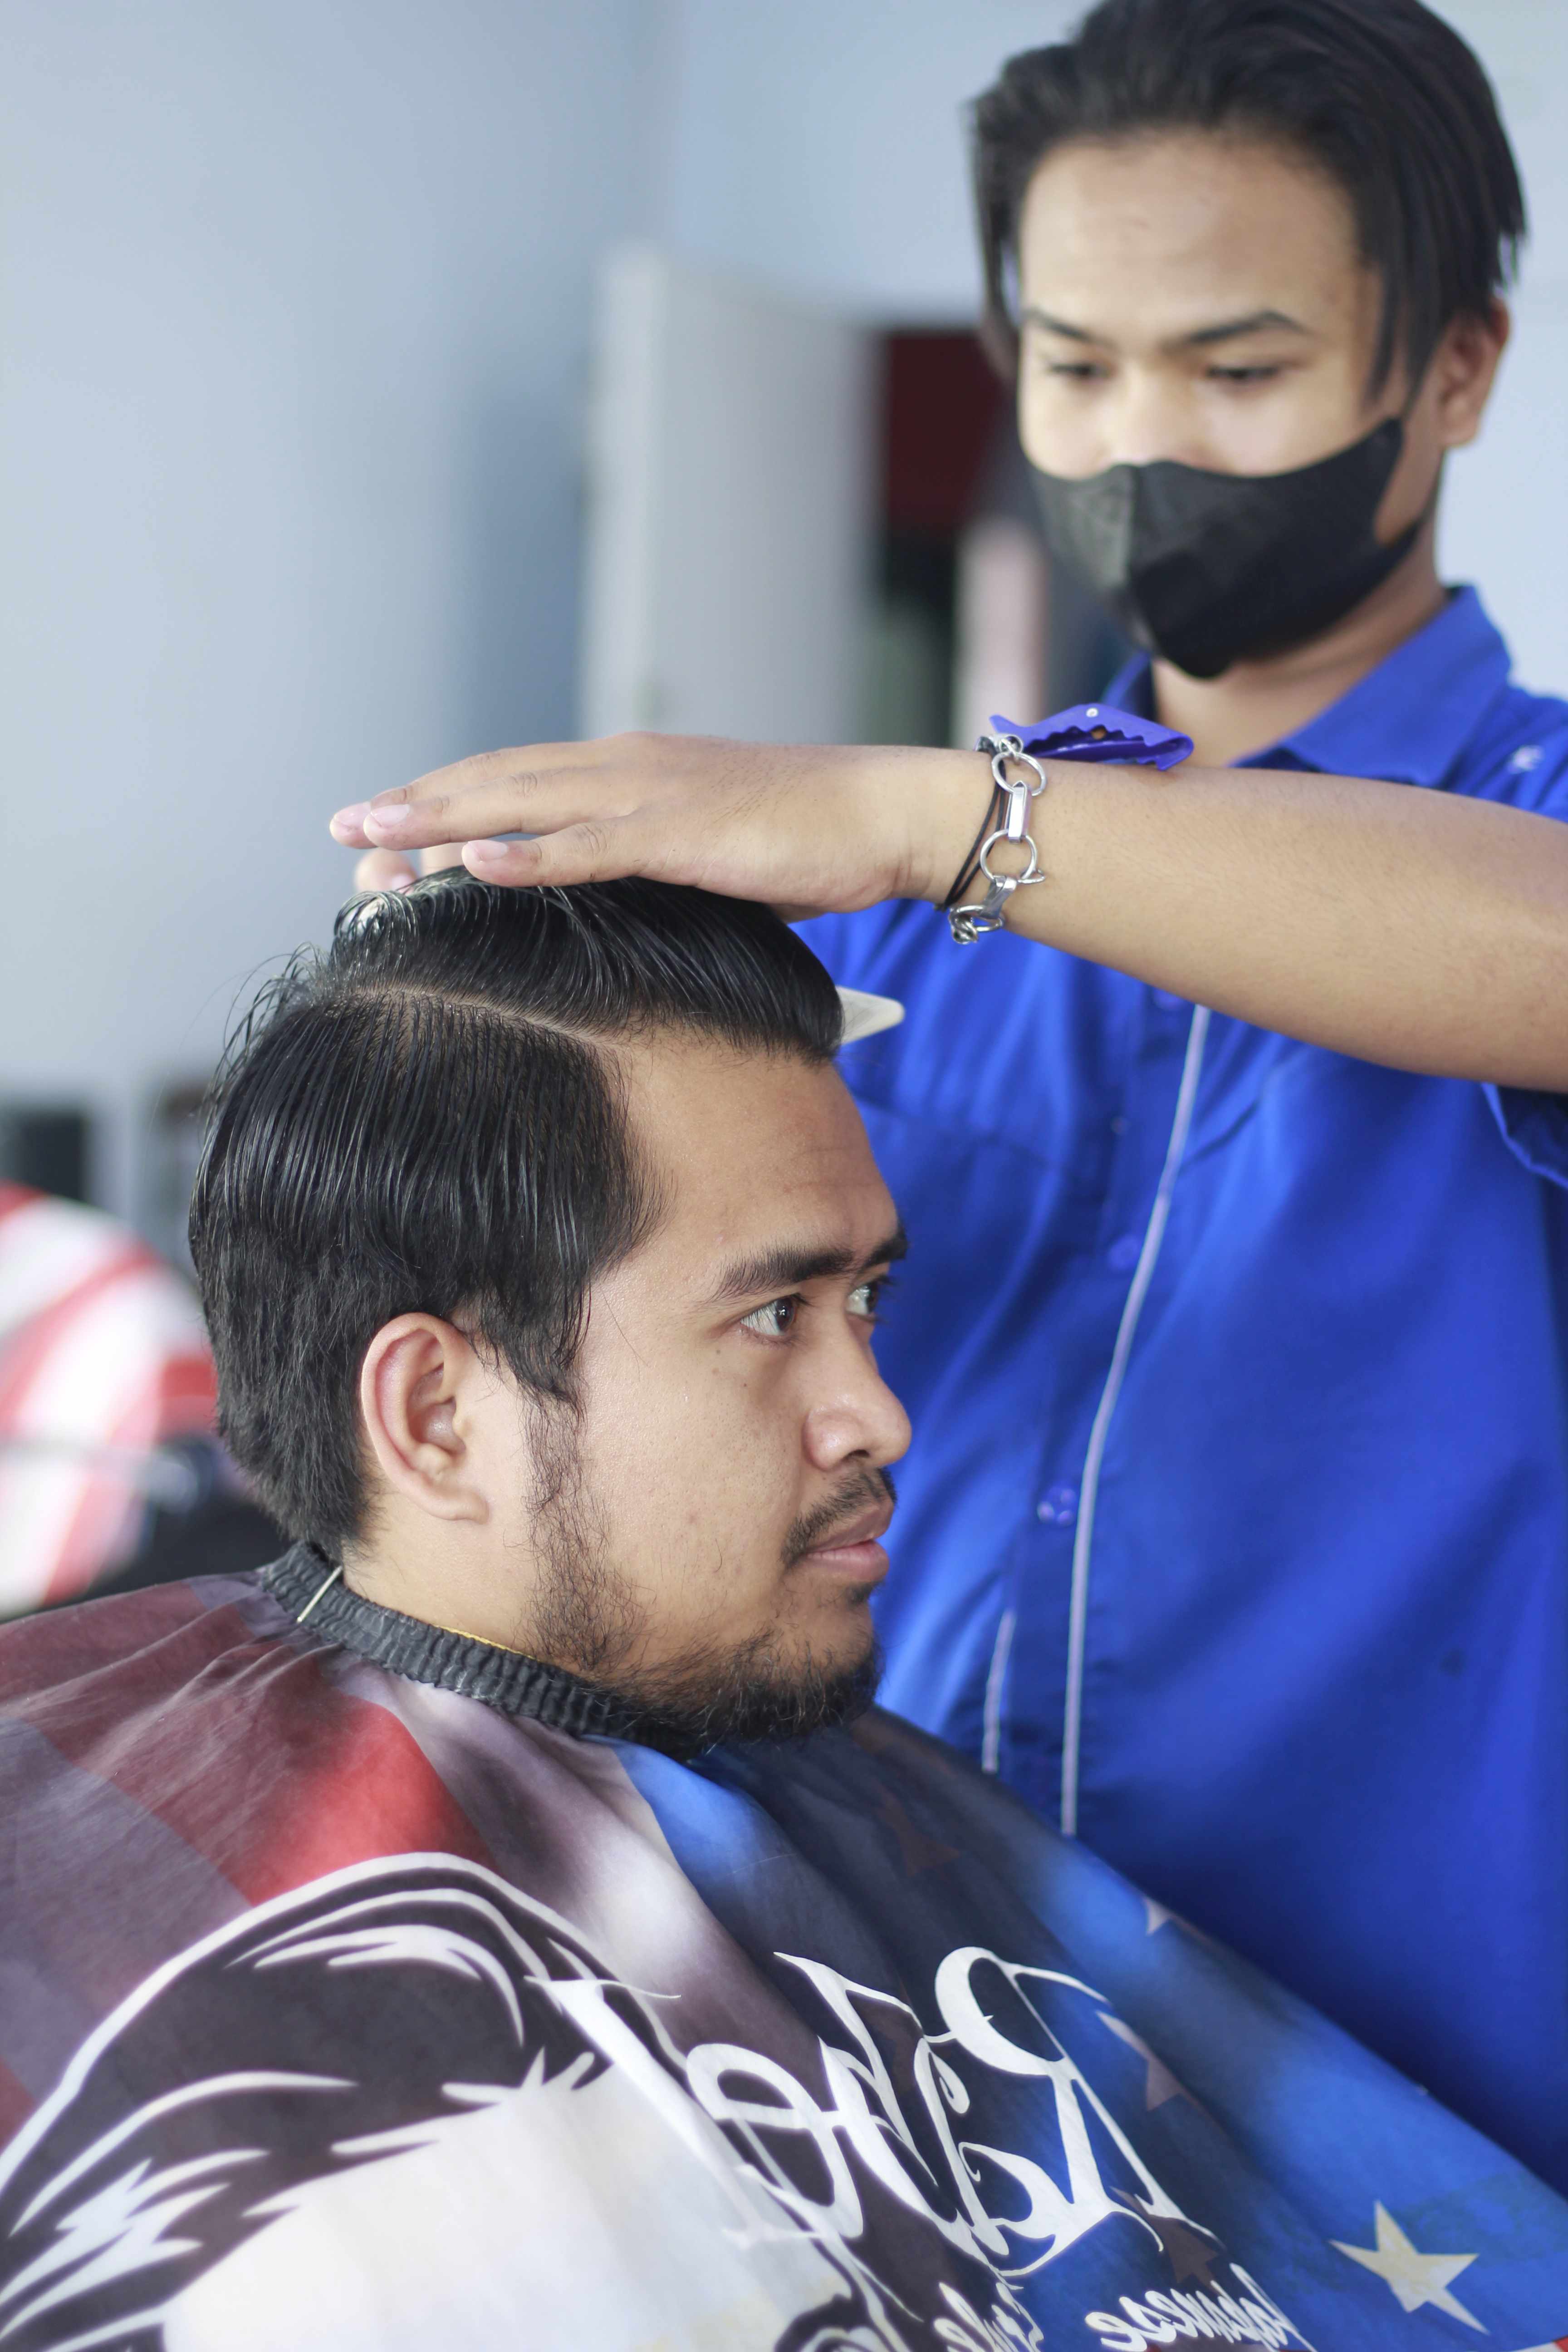 Tempat Cukur Rambut Di Kecamatan Kedungkandang Murah